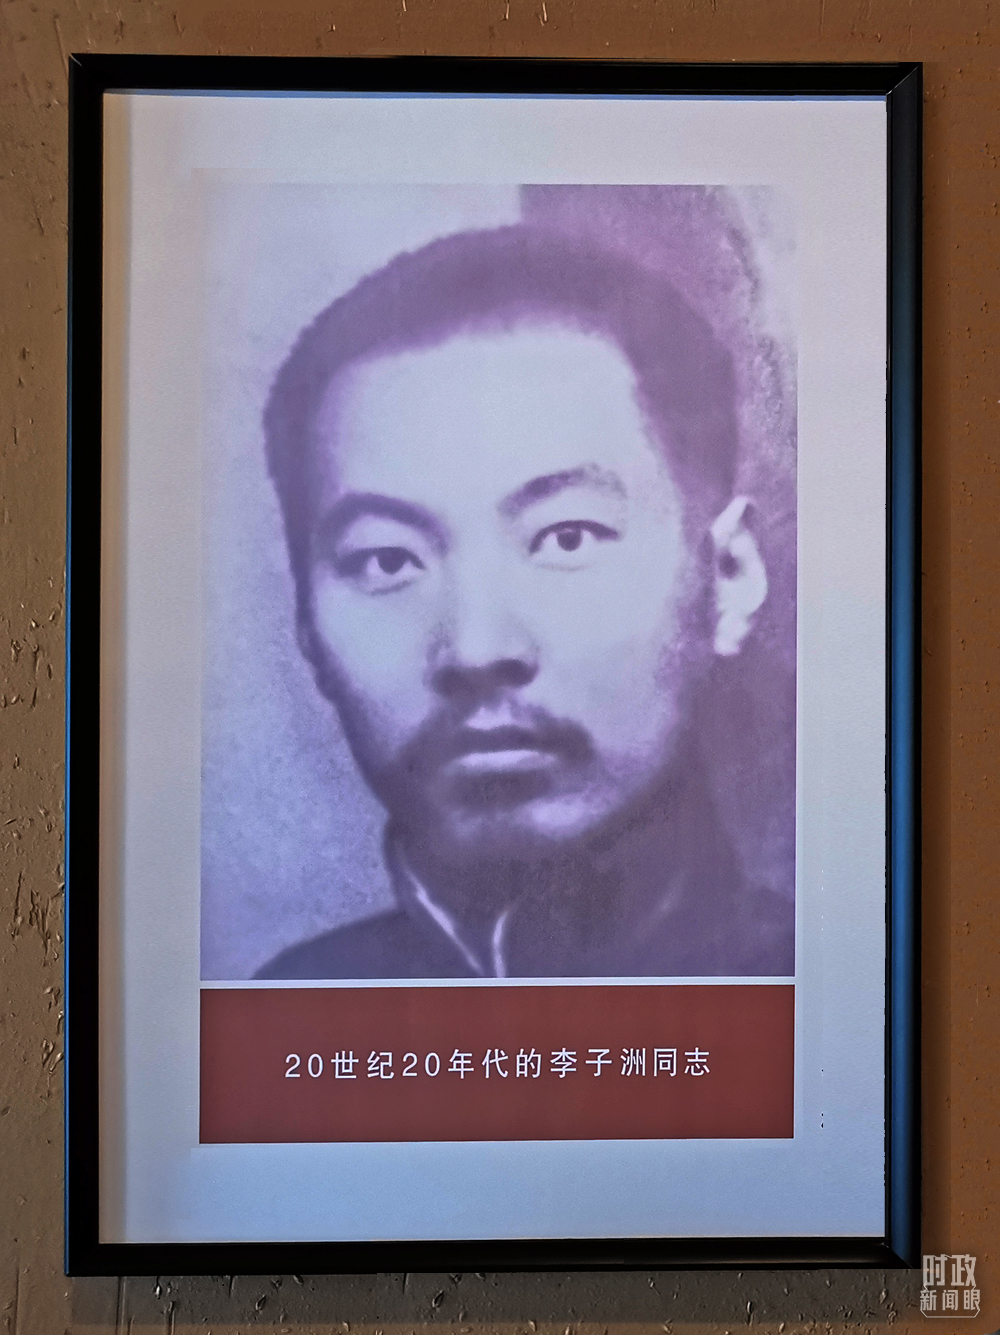 1923年,陕西省立第四师范学校创办(后更名为绥德师范学校)